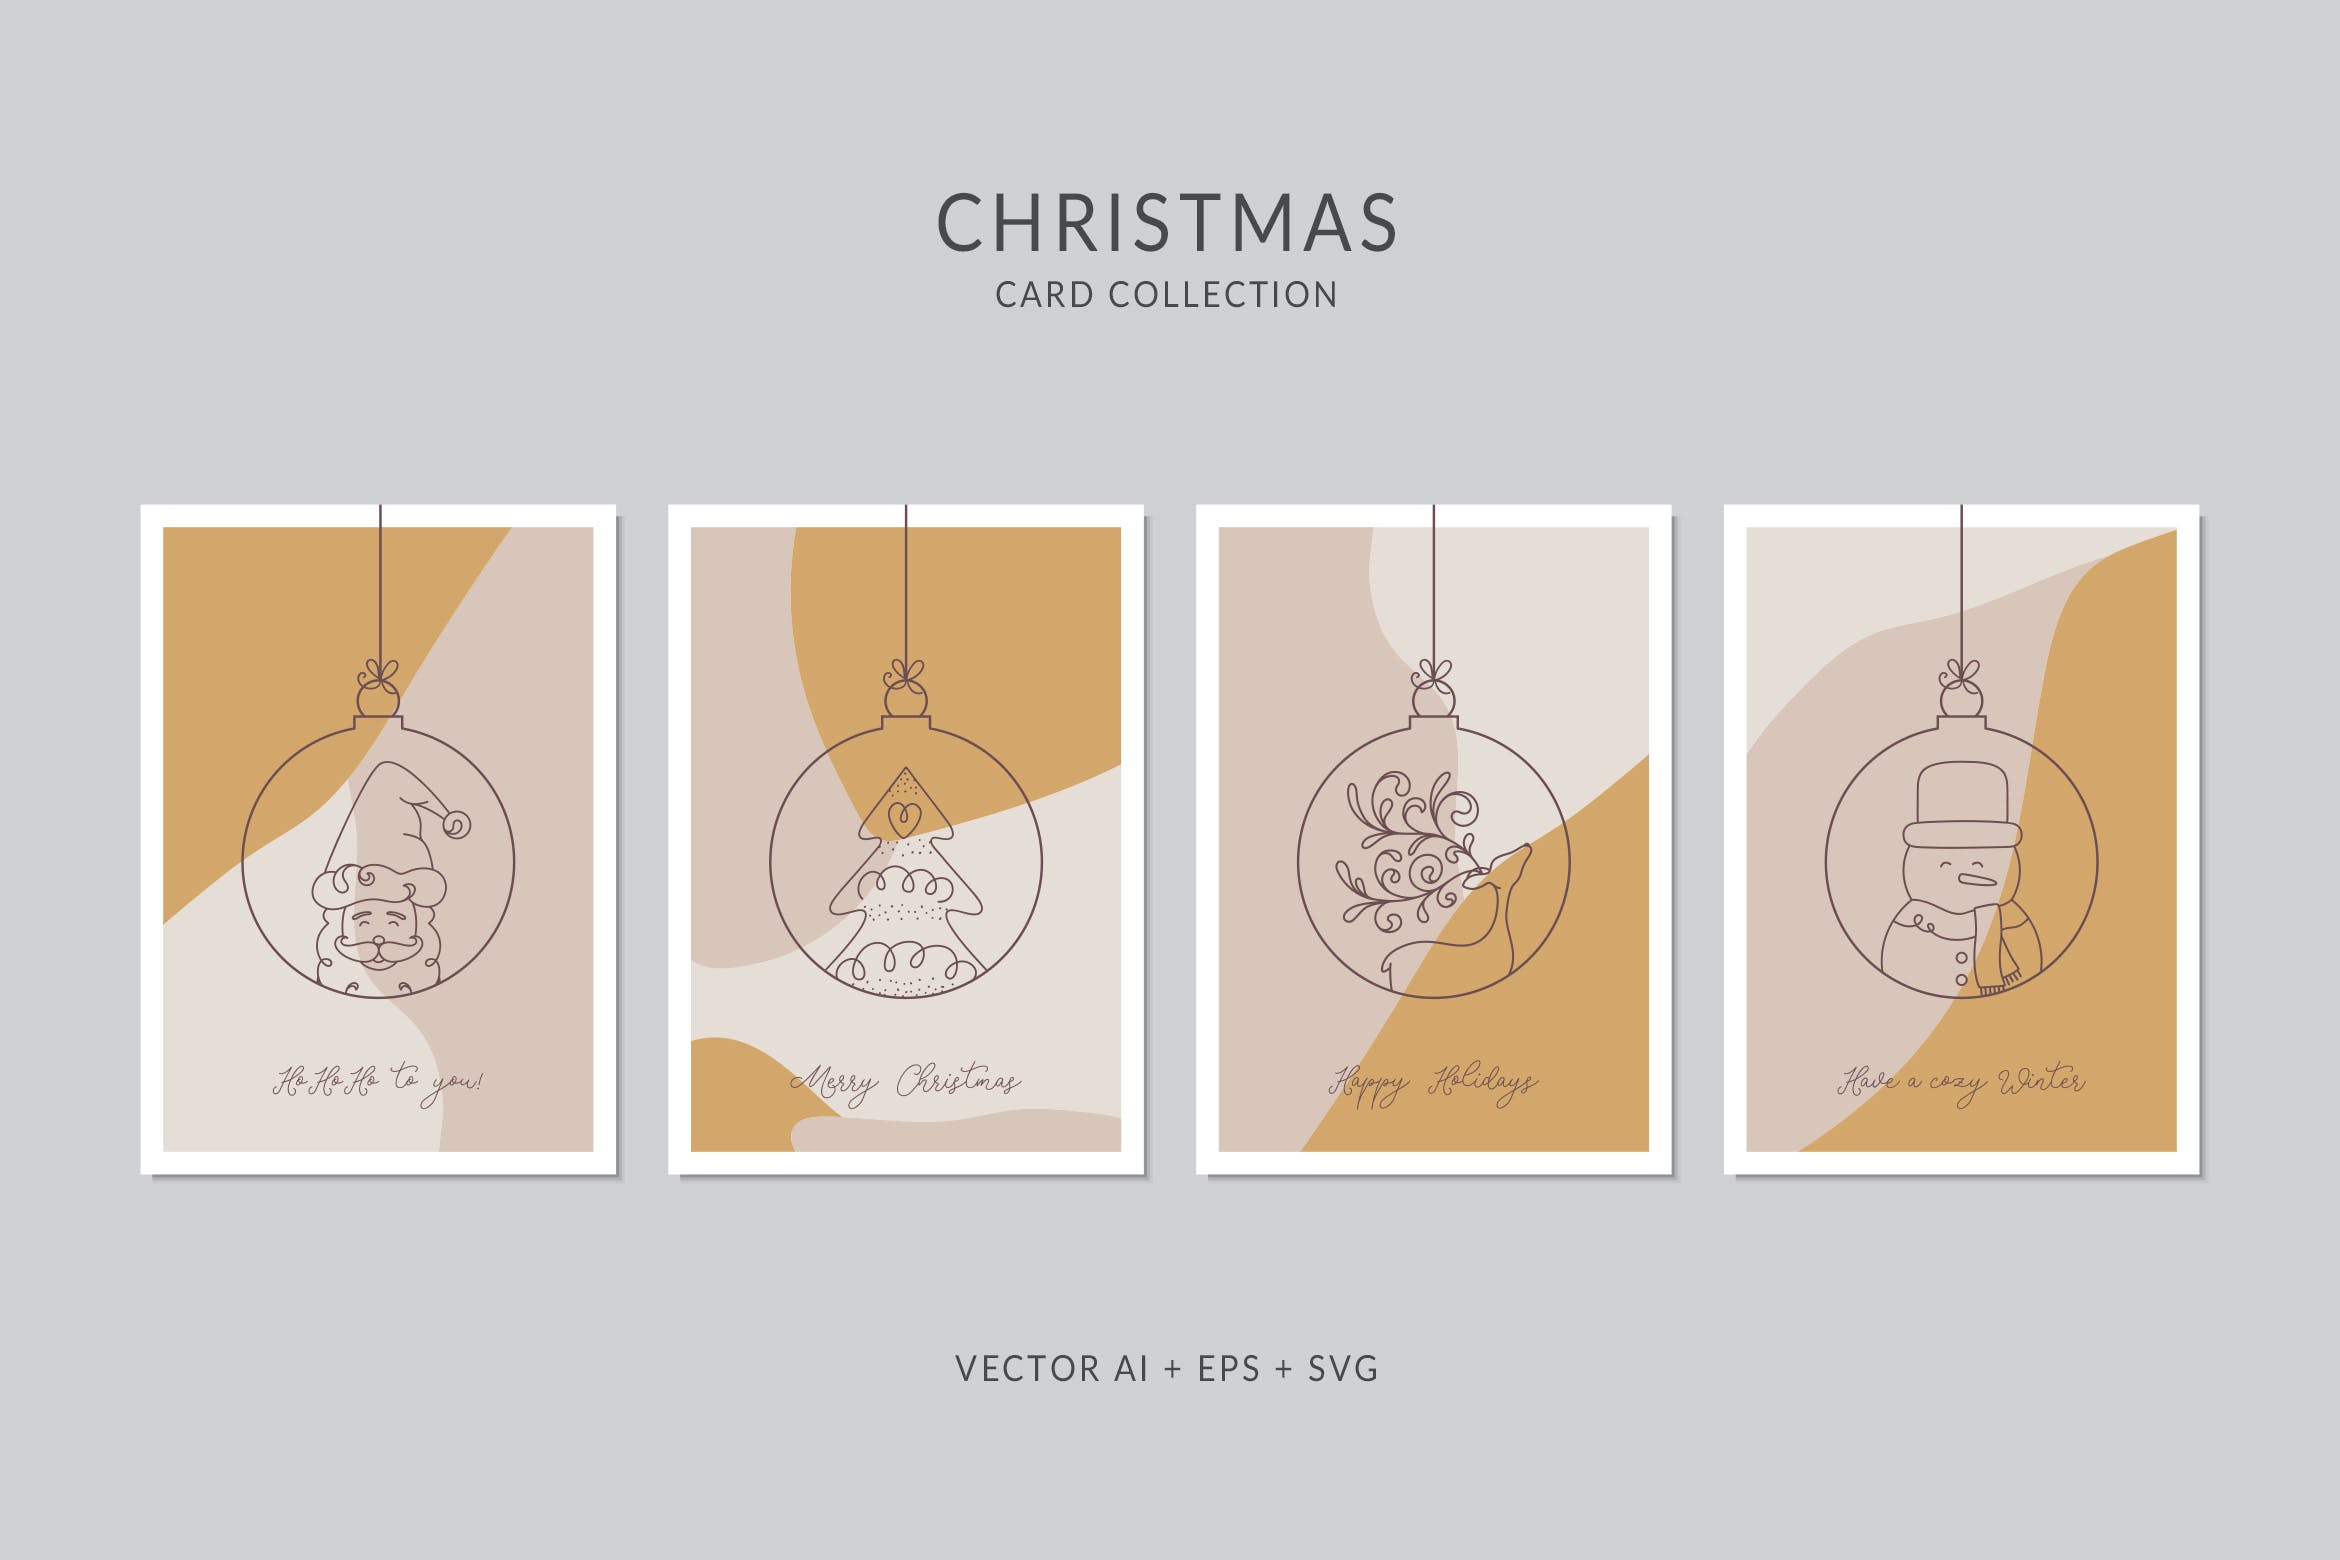 圣诞节贺卡简笔画艺术风格矢量设计模板集v6 Christmas Greeting Card Vector Set设计素材模板